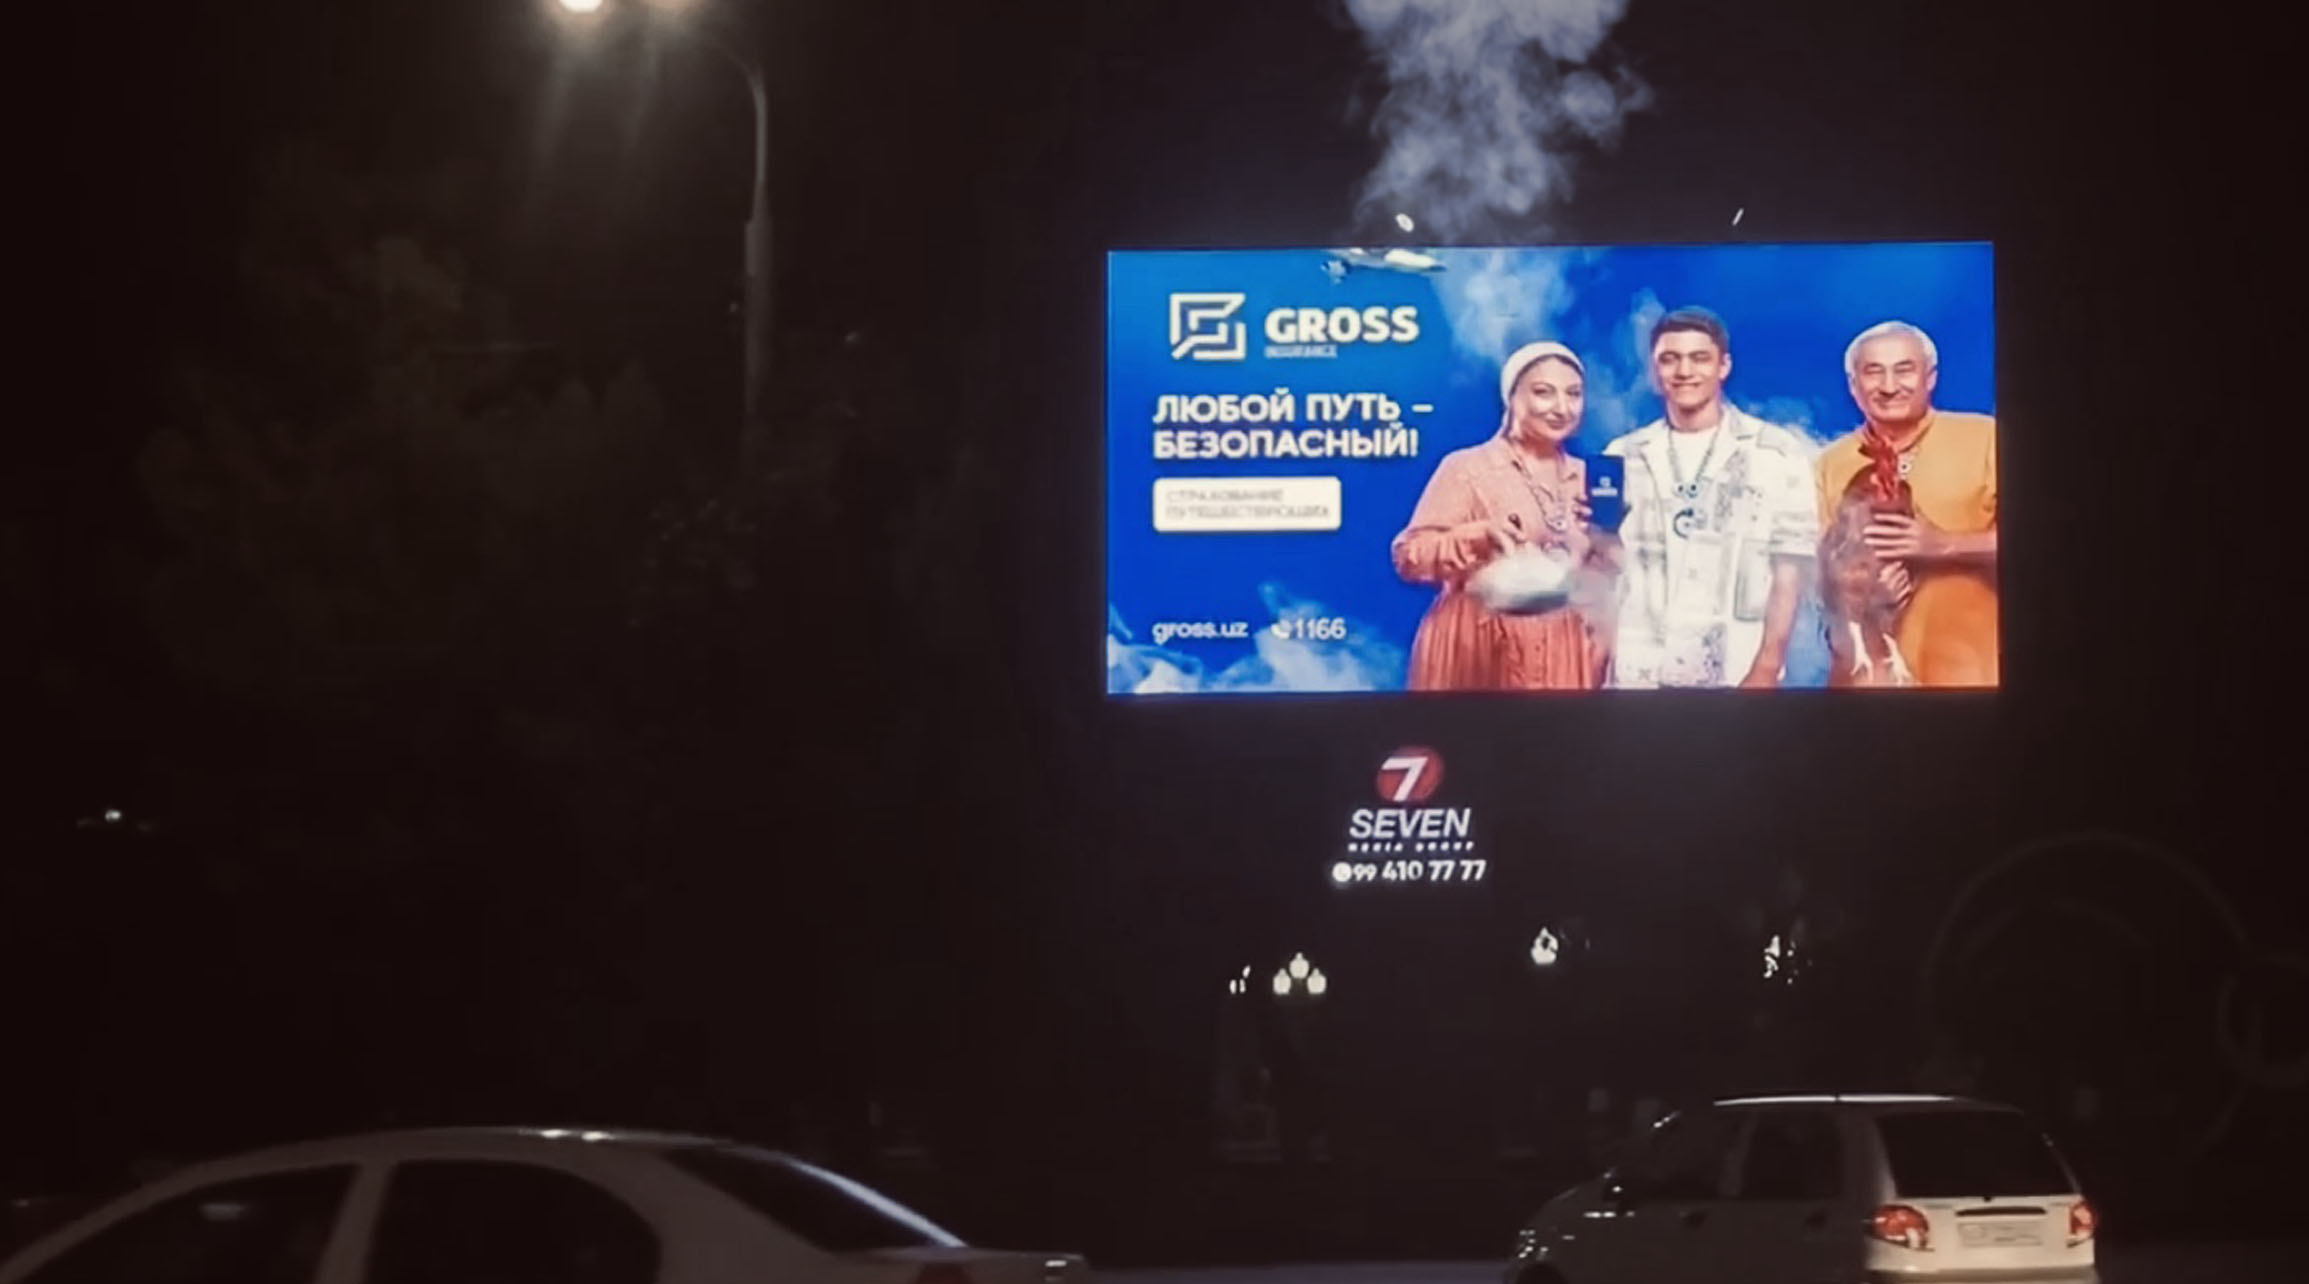 В Ташкенте появился билборд из которого идет дым исрыка